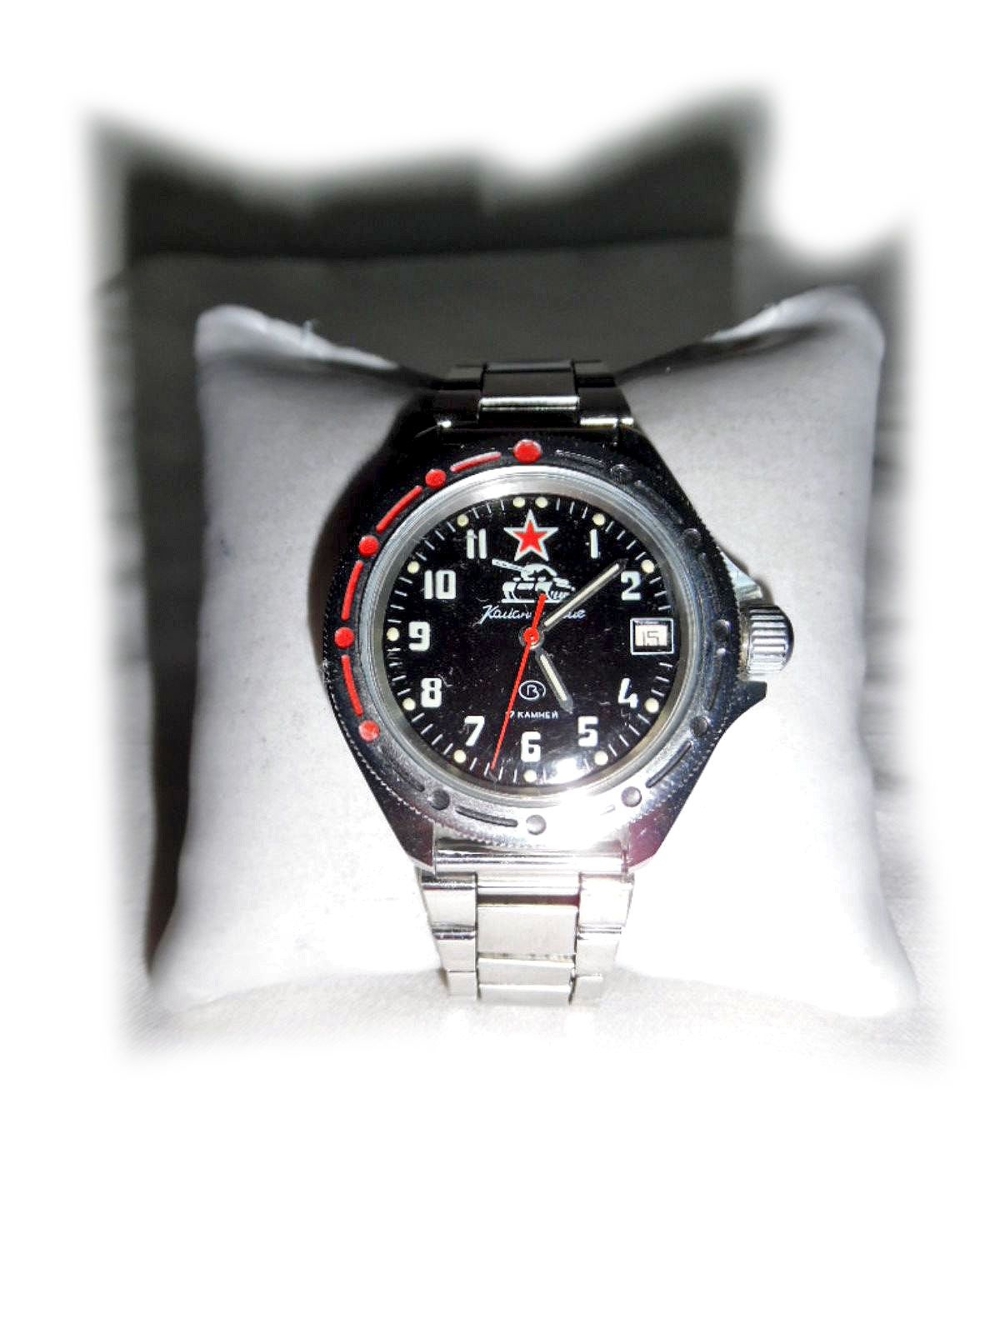 Seltene Armbanduhr von Vostok